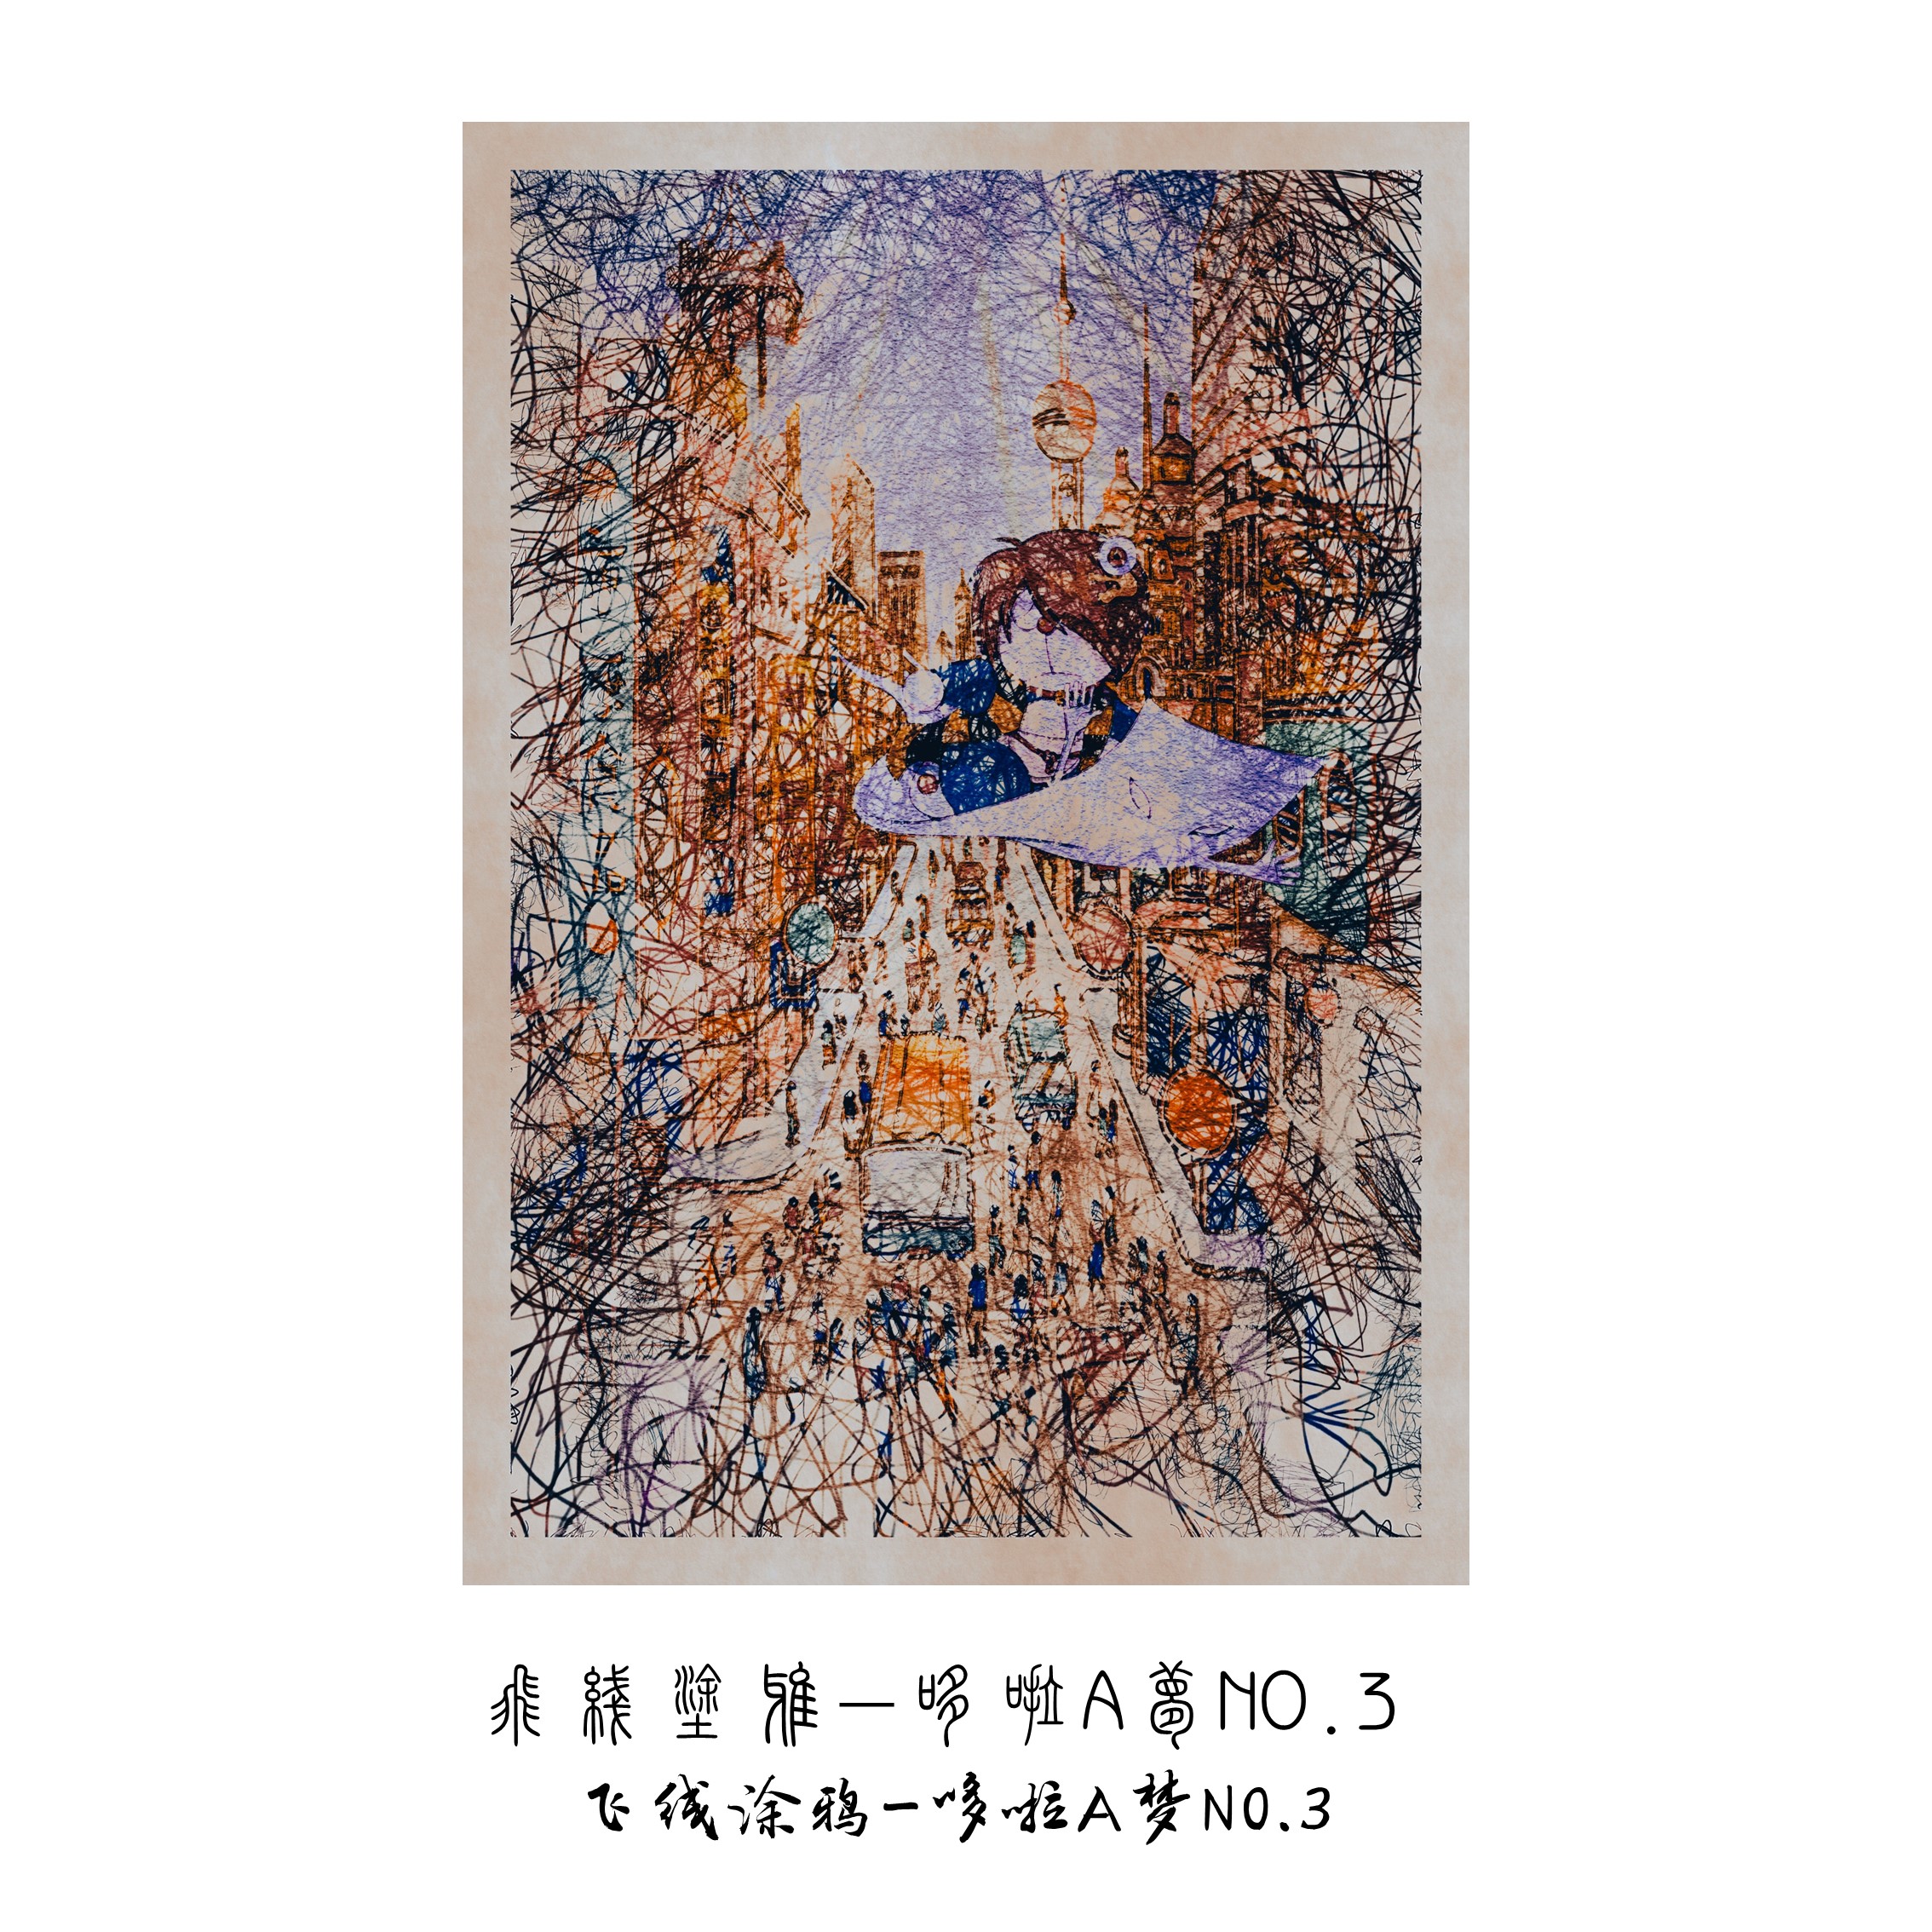 艺术家限量版画画三作品飞线涂鸦系列-哆啦A梦NO.3签名装饰画